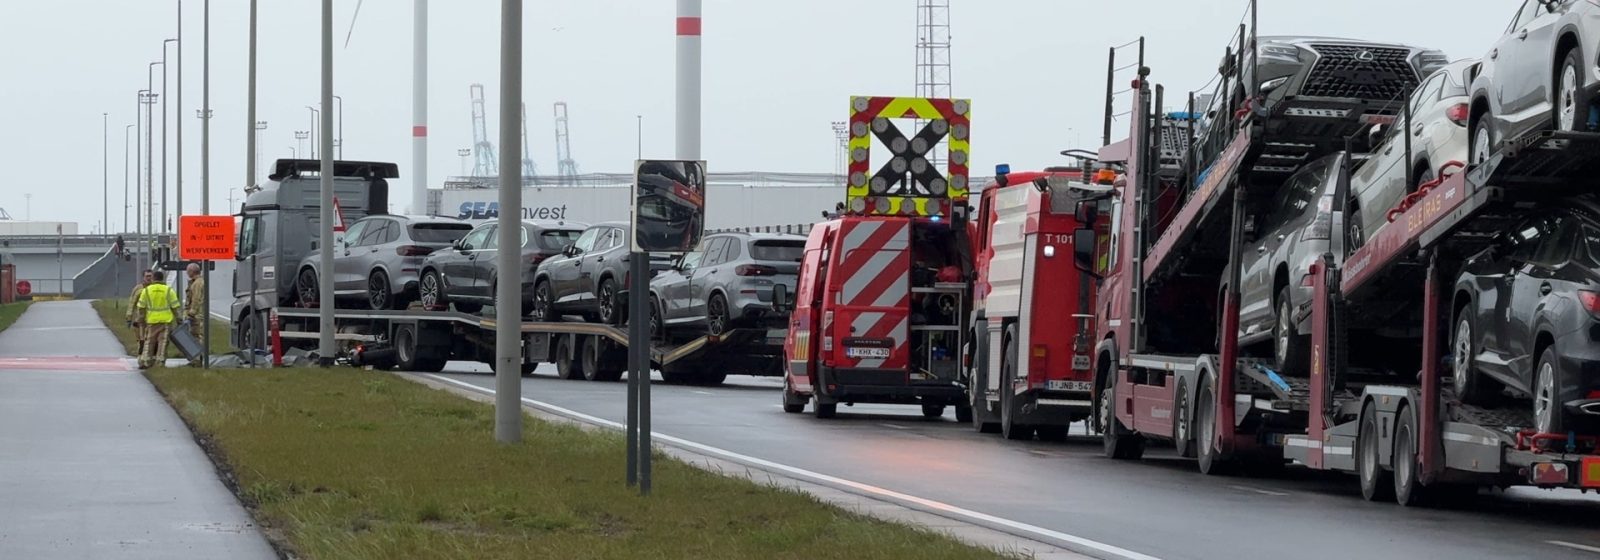 Ongeval met autotruck in Koffieweg Zeebrugge